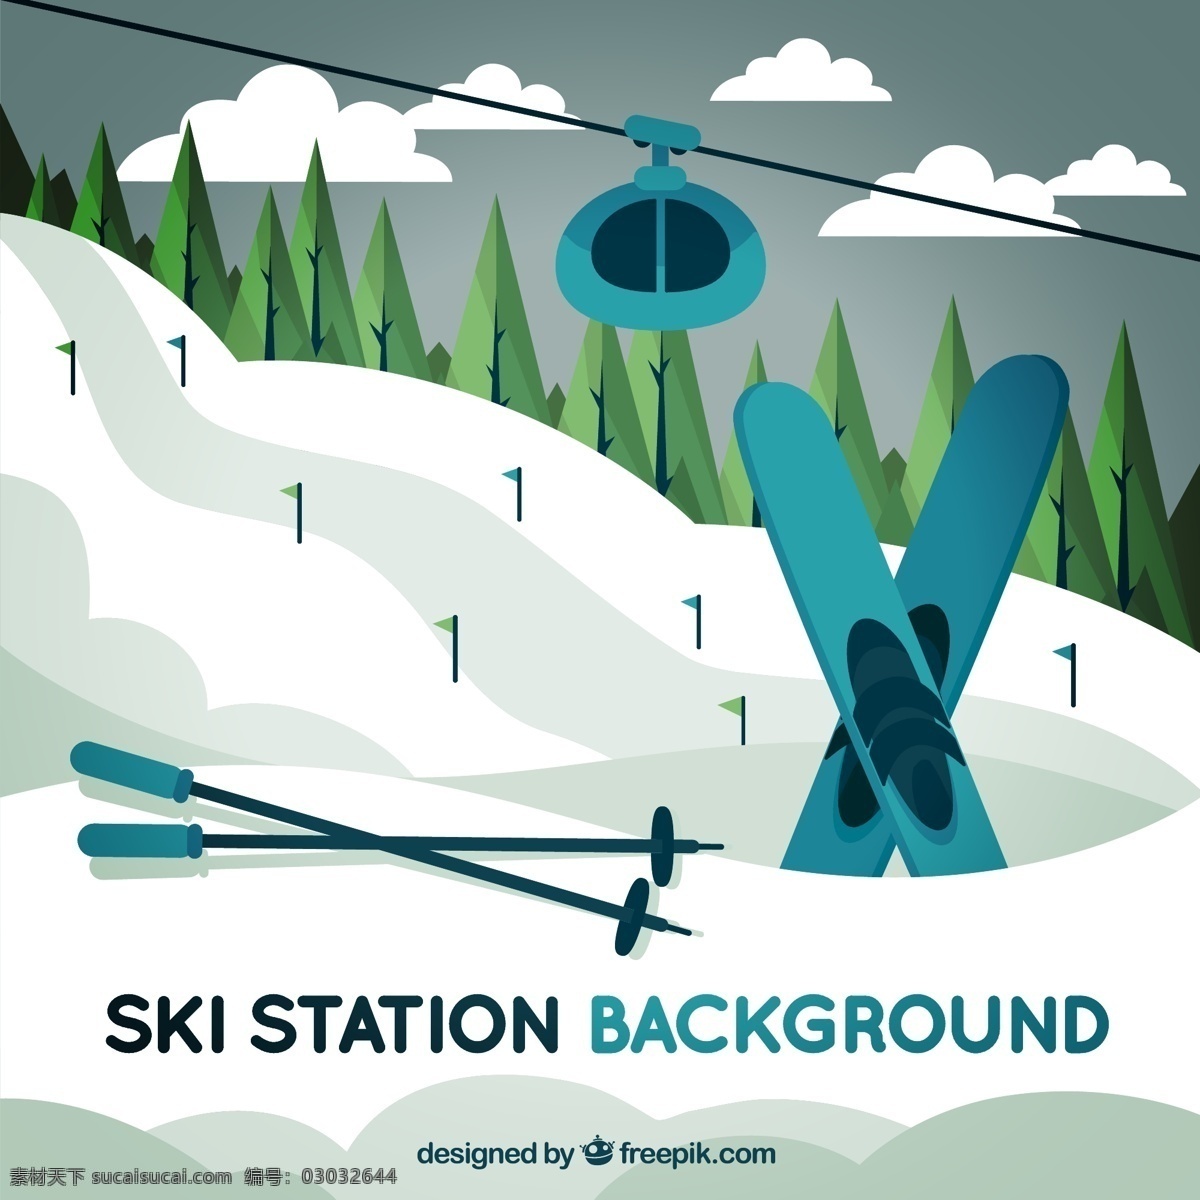 创意 滑雪场 滑雪 缆车 风景 树林 树木 松树 云朵 雪山 旅游 度假 滑雪缆车 滑雪板 动漫动画 风景漫画